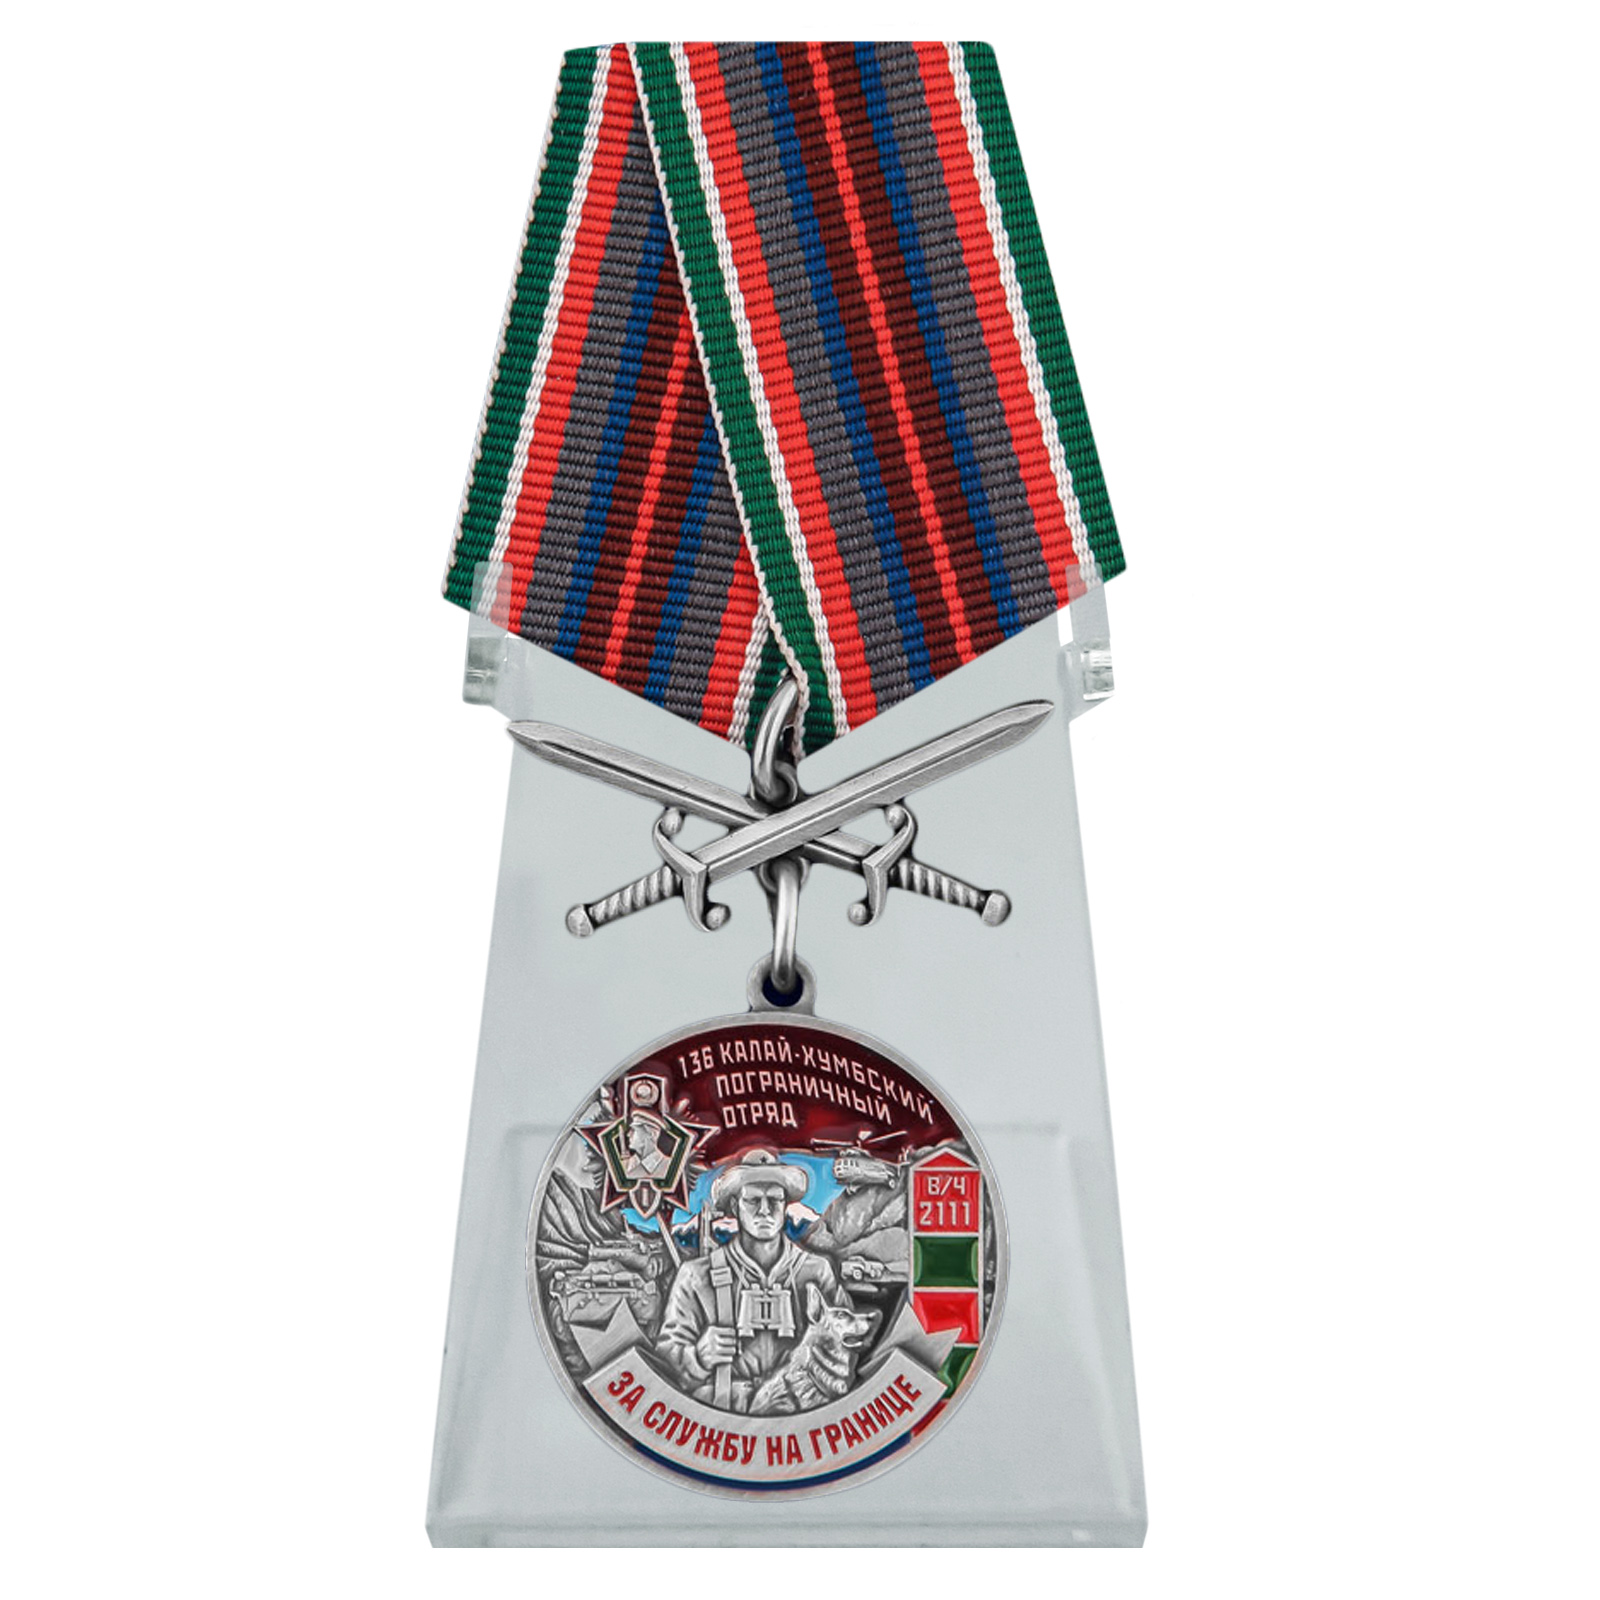 Медаль "За службу в 136 Калай-Хумбском погранотряде" на подставке